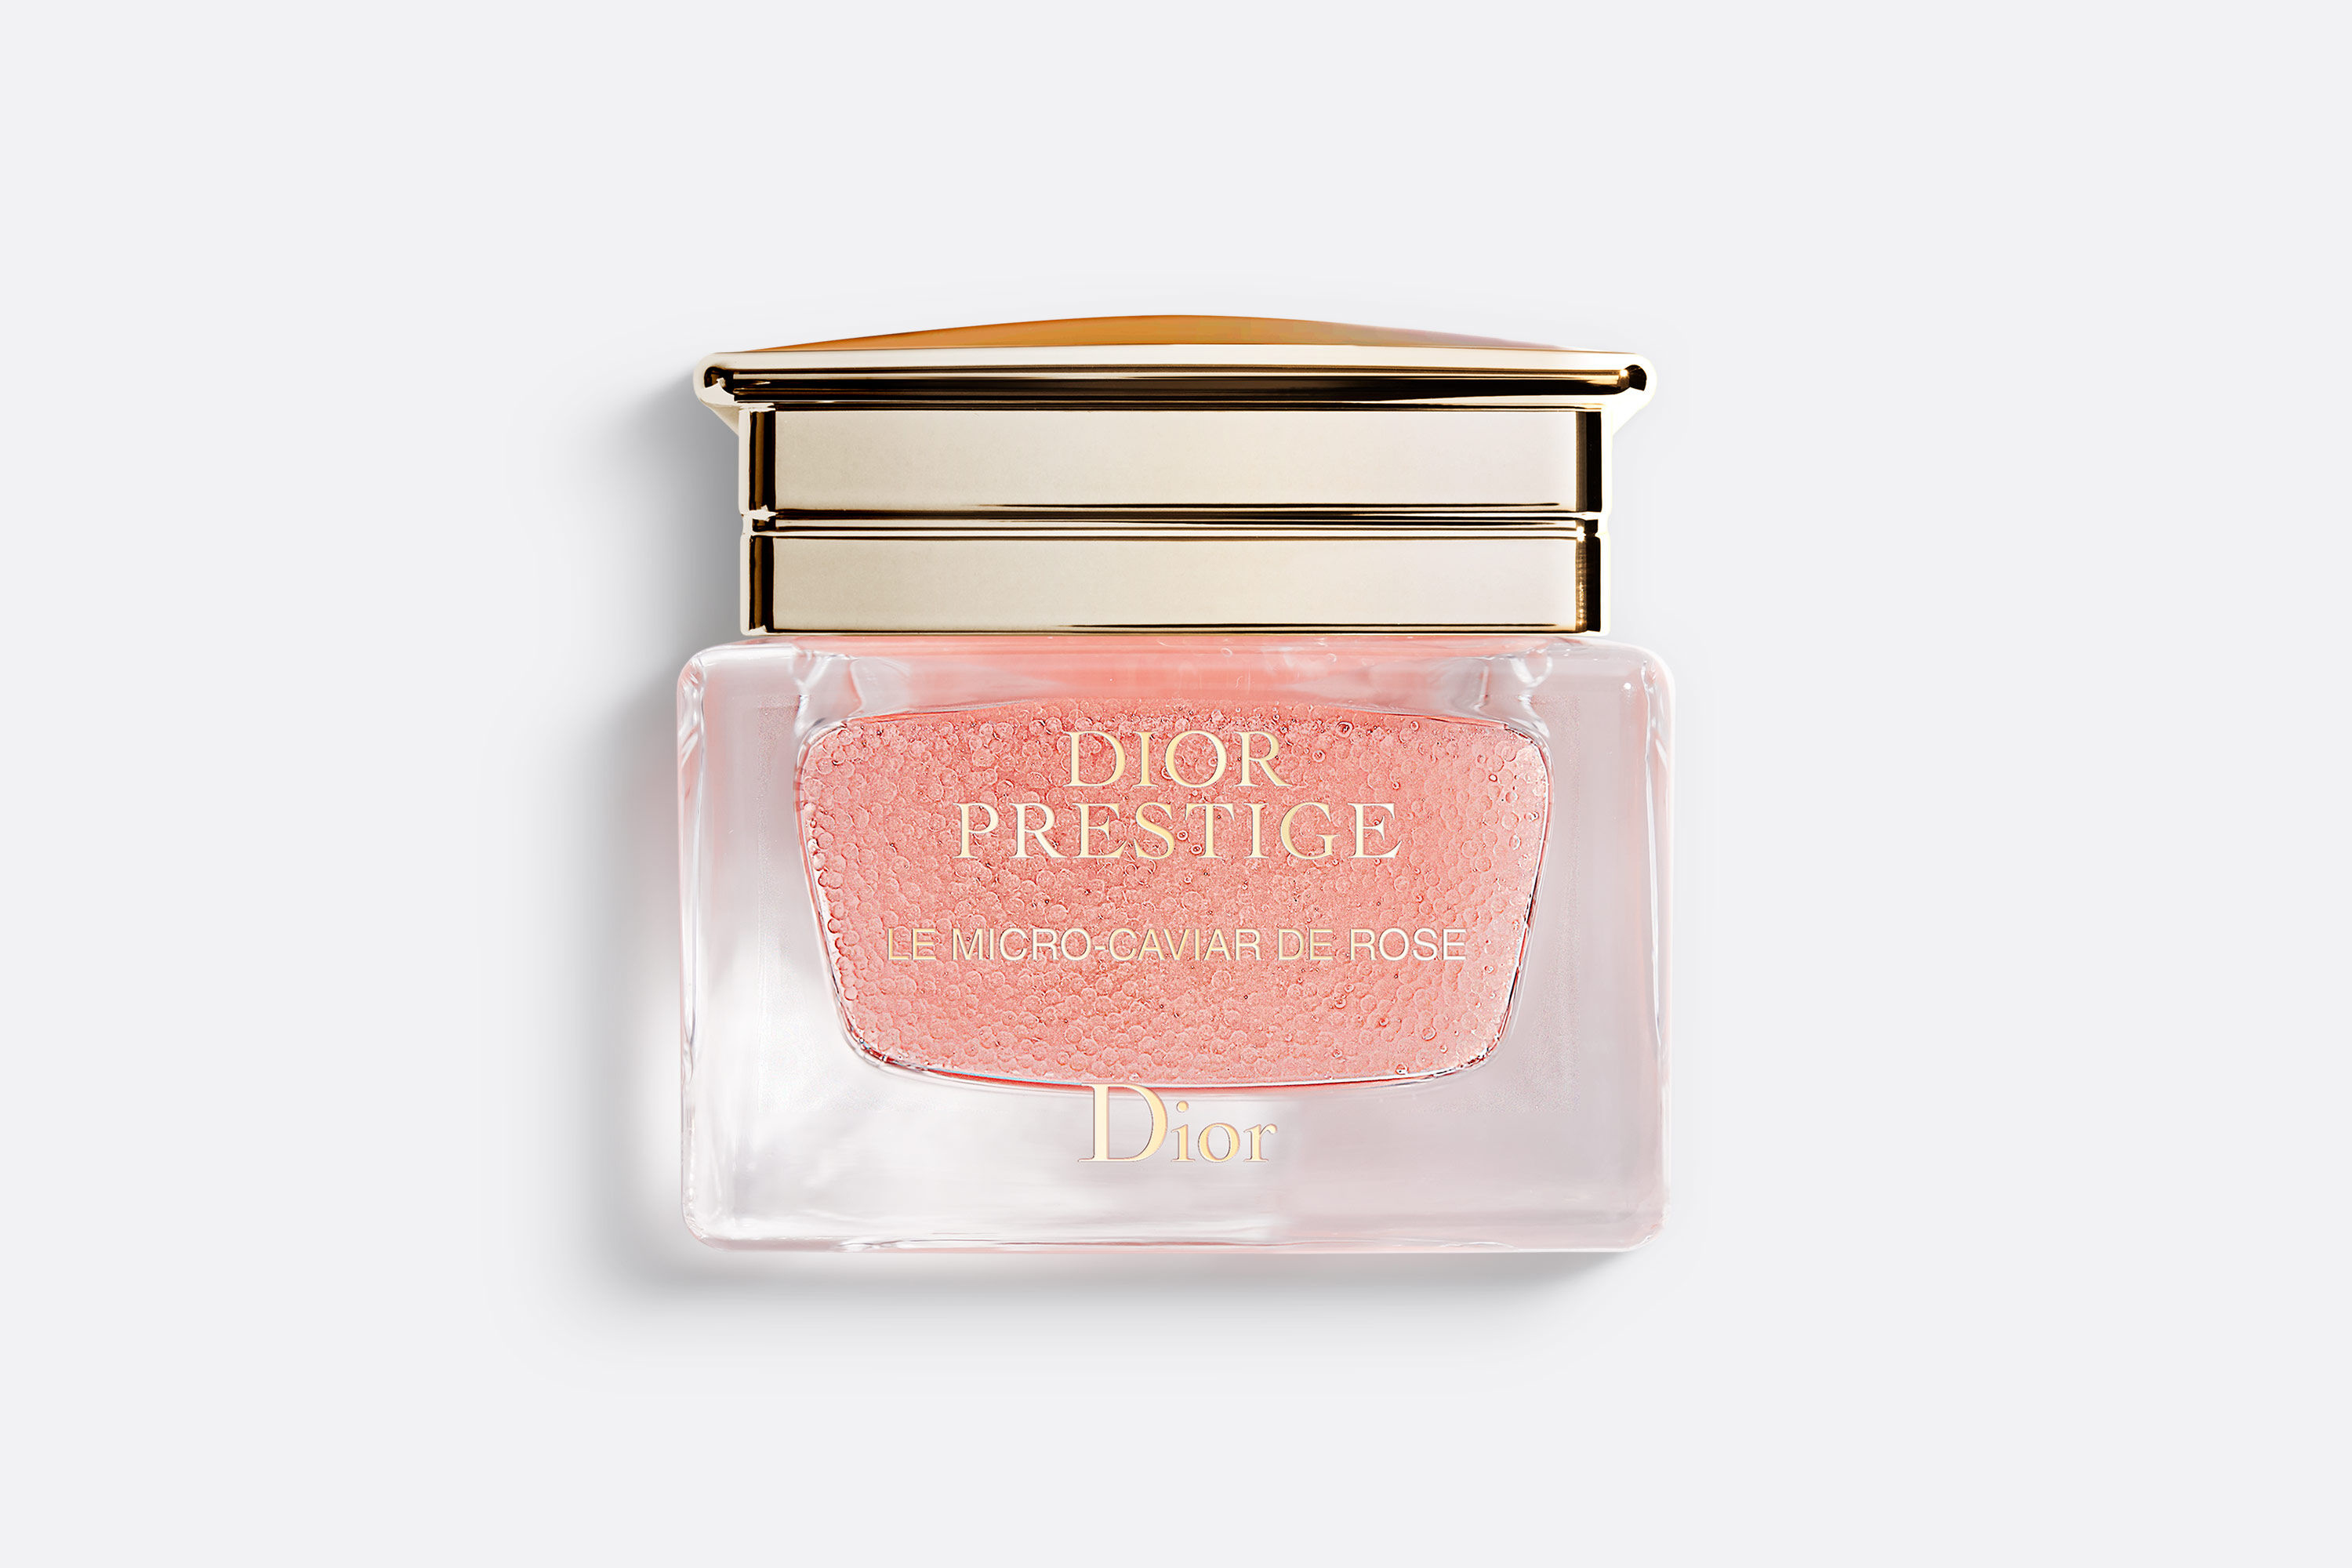 Dior Prestige Le Micro-Caviar de Rose